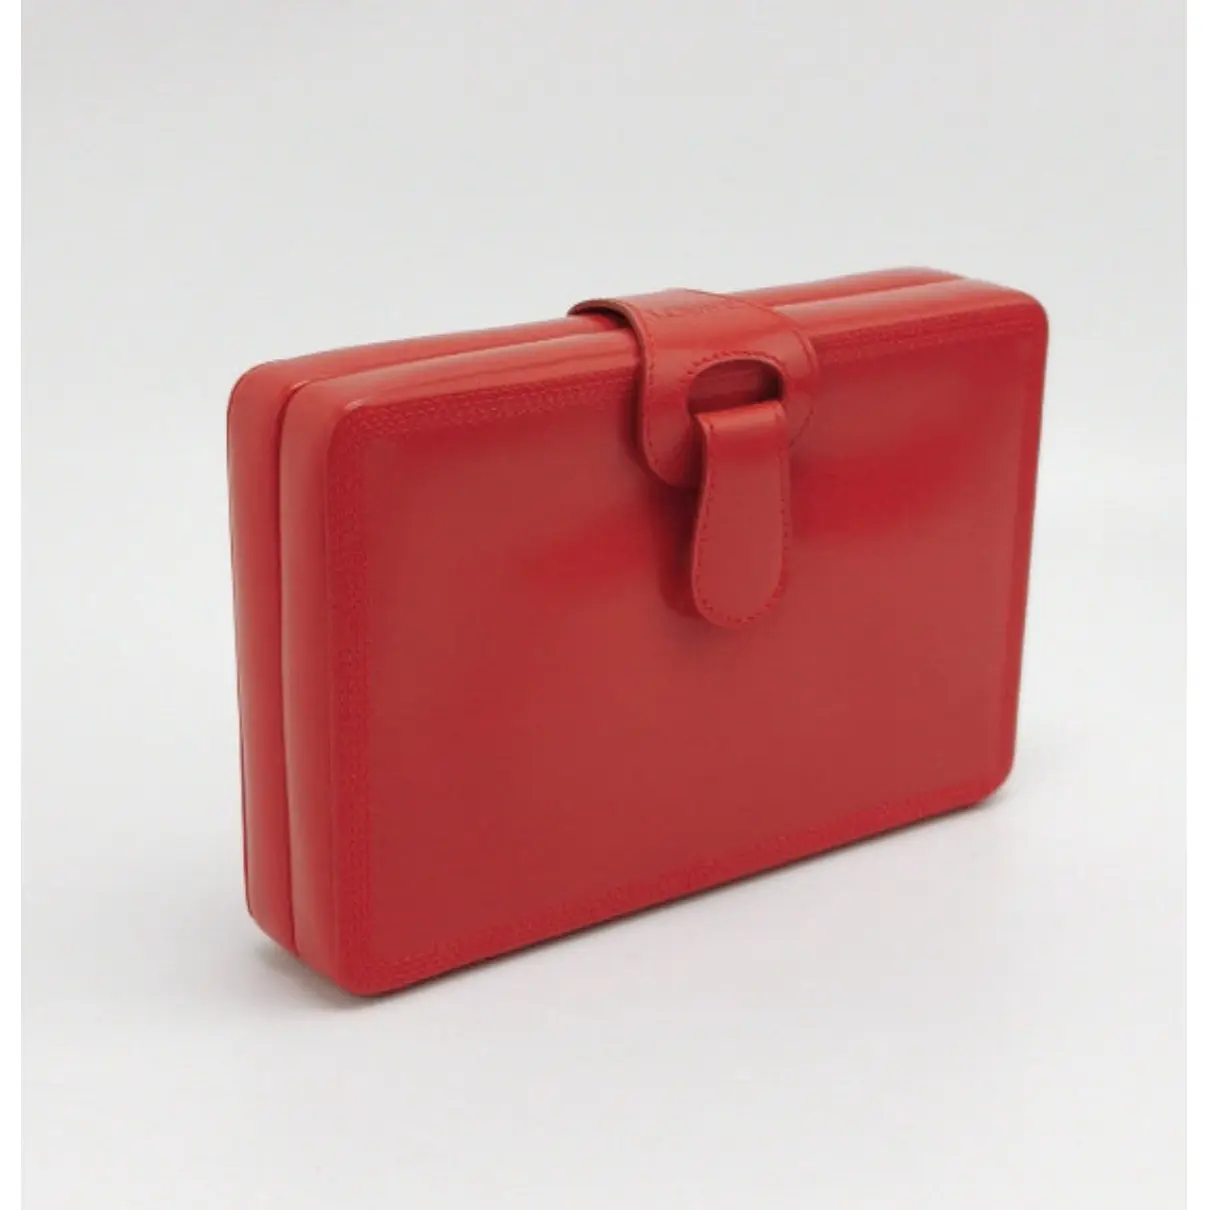 Buy Loewe Leather clutch bag online